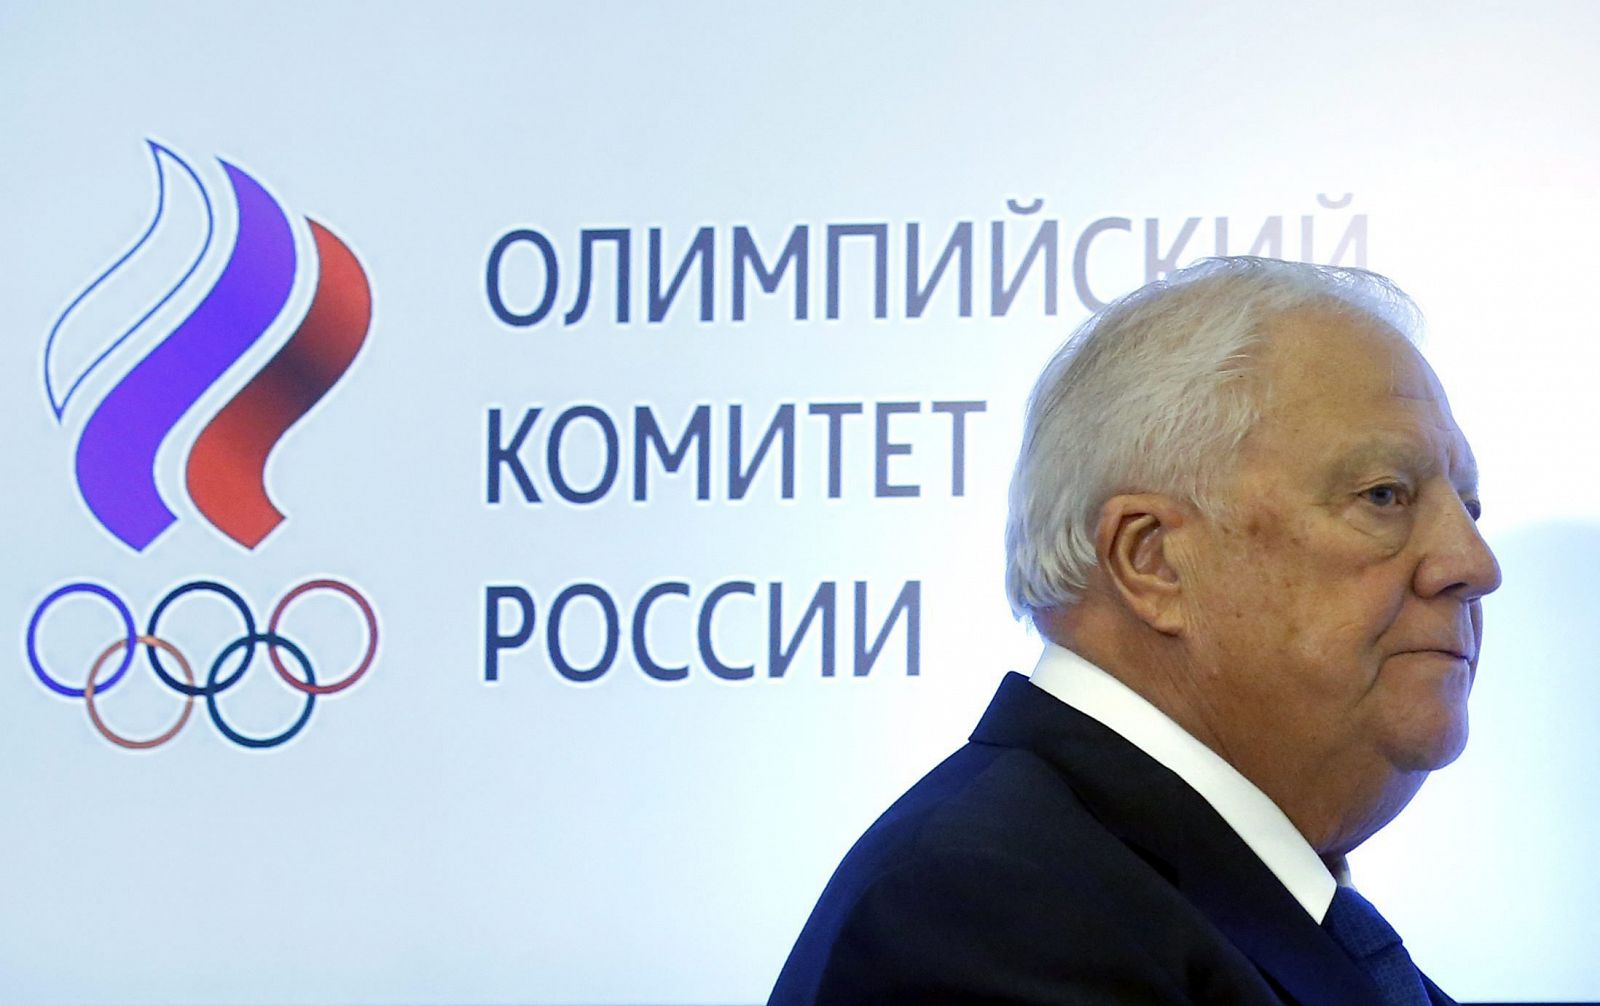 El miembro ruso del Comité Olímpico Internaconal (COI) Vitaly Smirnov participa en una sesión del Comité Olímpico Ruso (COR) celebrada en Moscú.